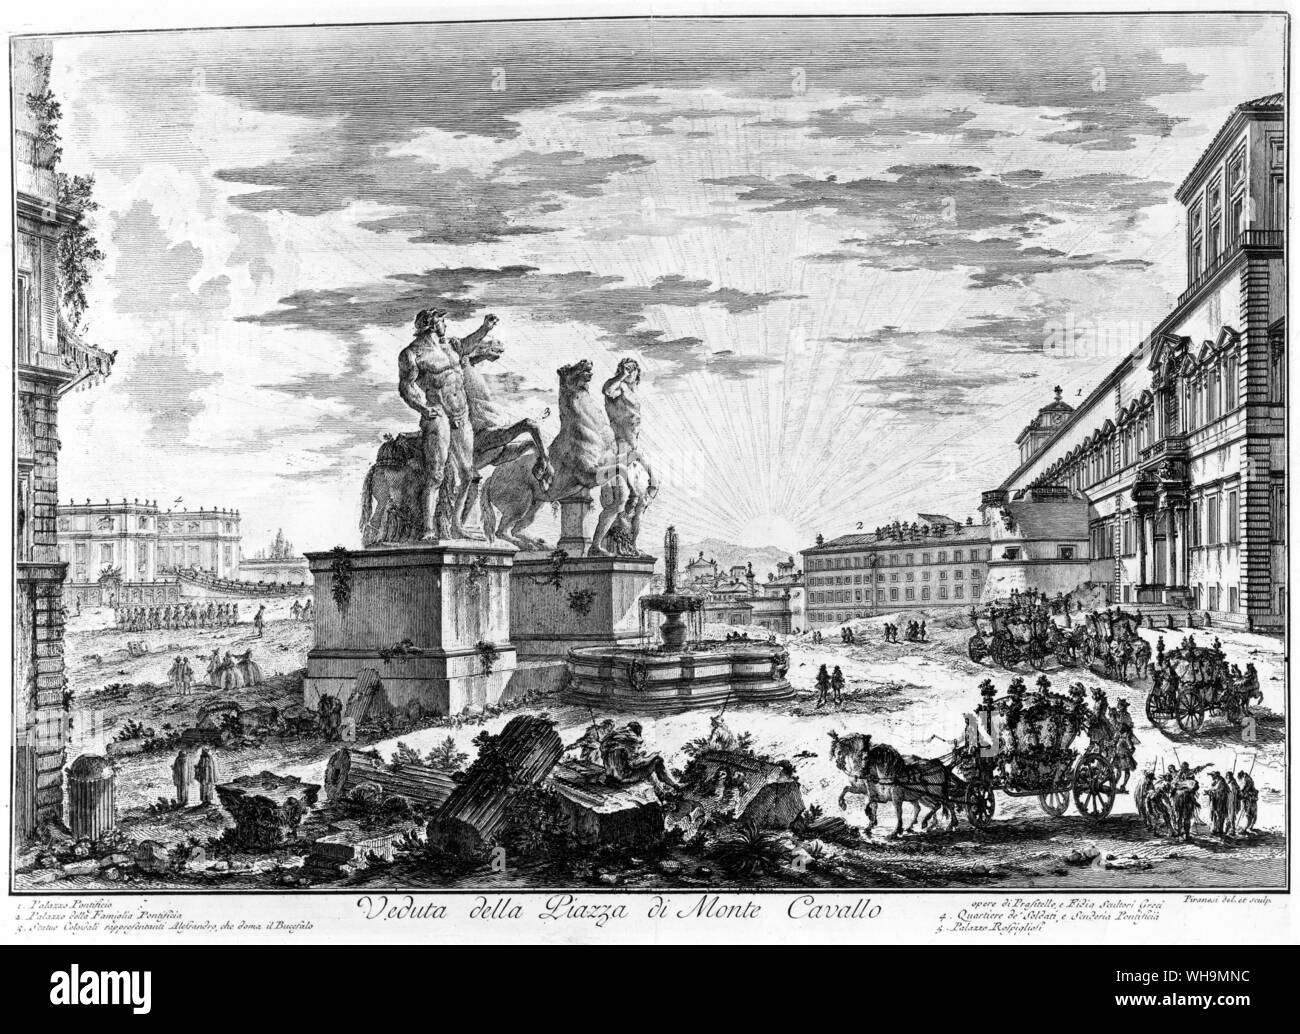 Giambattista Piranesi (1720-1778), architecte et artiste graphique. Du piranèse vue du cheval-tamers sur Monye Cavallo et Palais du Quirinal (droite). La fontaine a été démoli et rénové en 1782. L'obélisque, maintenant une caractéristique de ce groupe de fontaine a été ajouté en 1786. Veduta della Piazza di Monte Cavallo. Banque D'Images